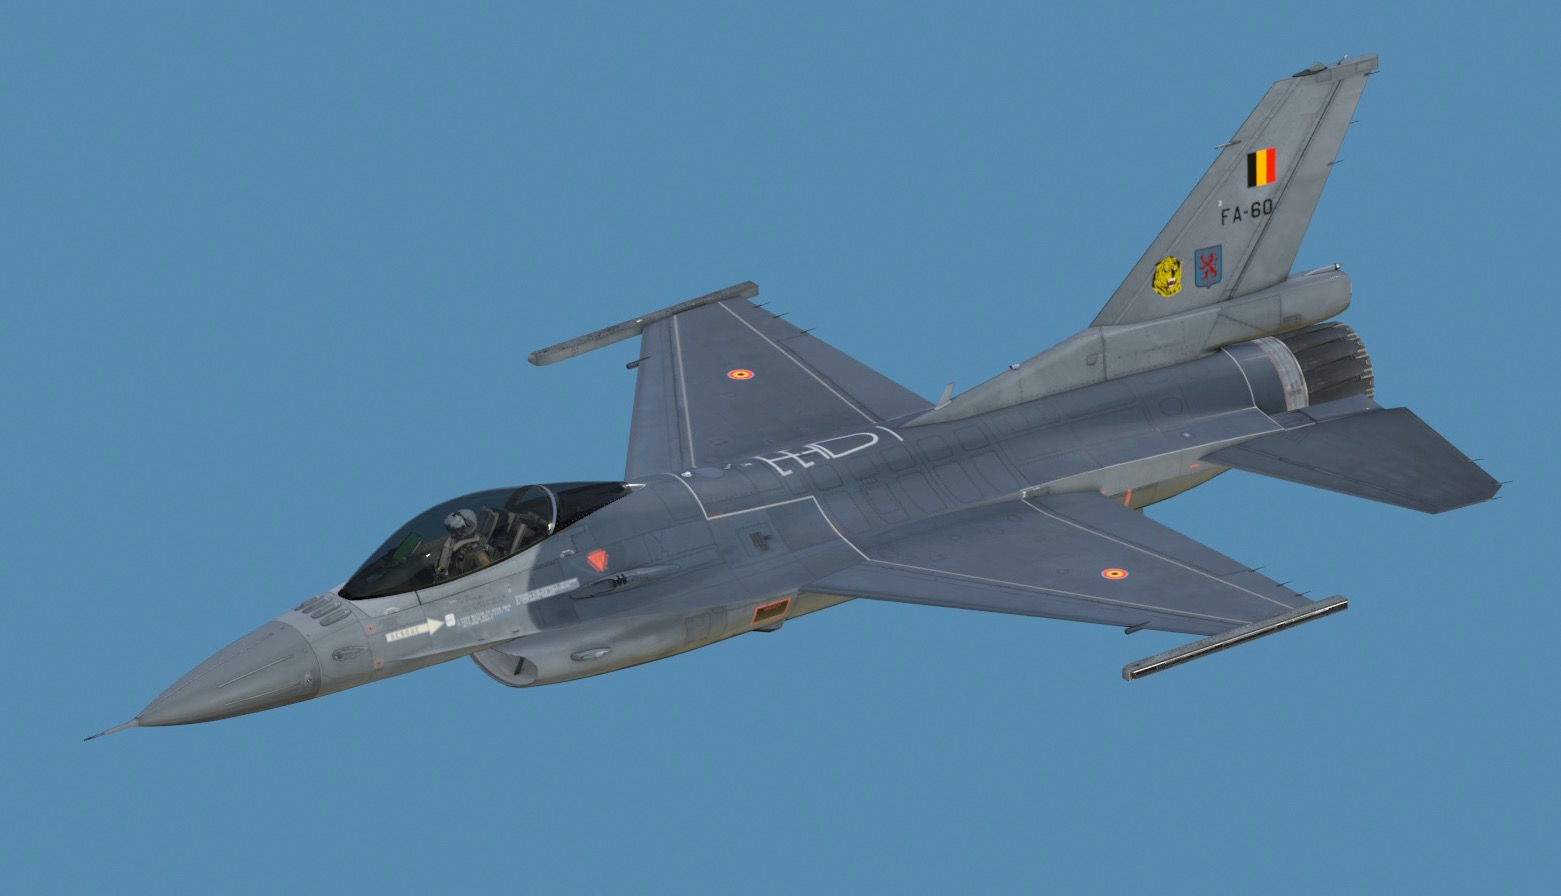 Belgium Air Force FA-60